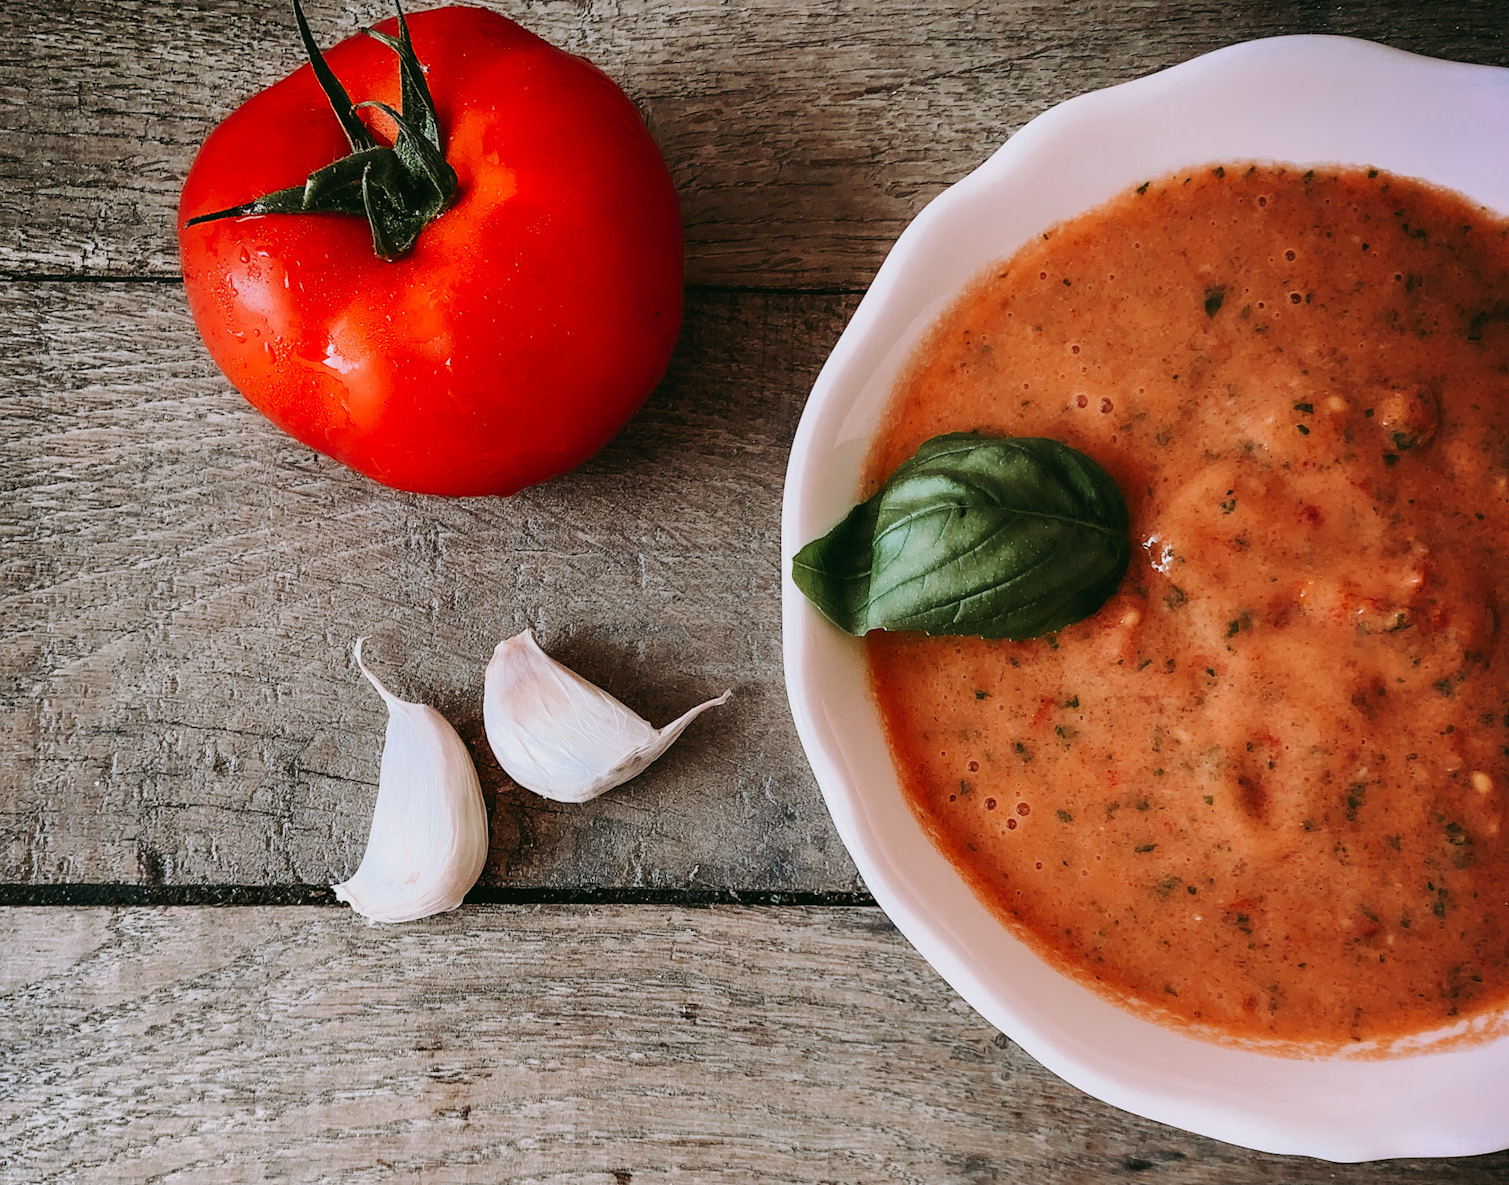 Comment enlever l’acidité d’une sauce tomate ?